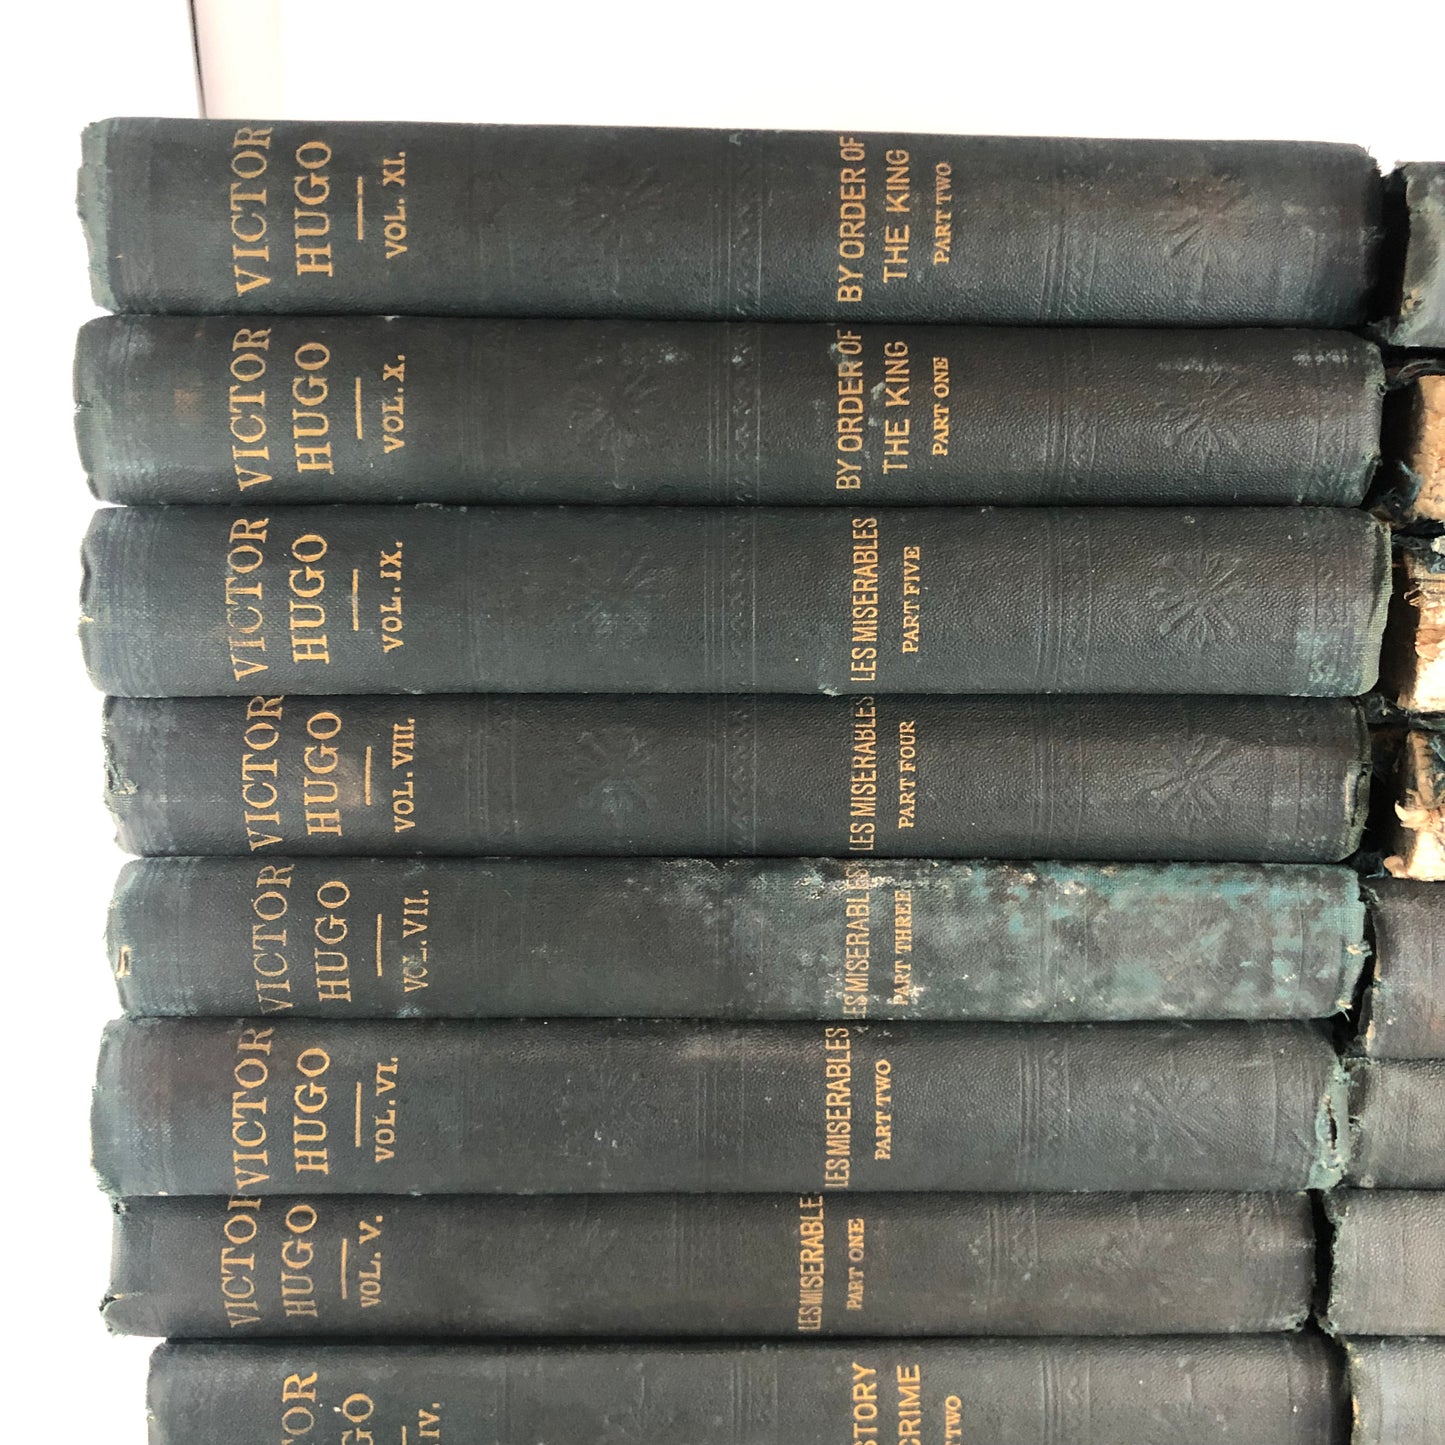 The Novels of Victor Hugo (22 Volumes Complete)